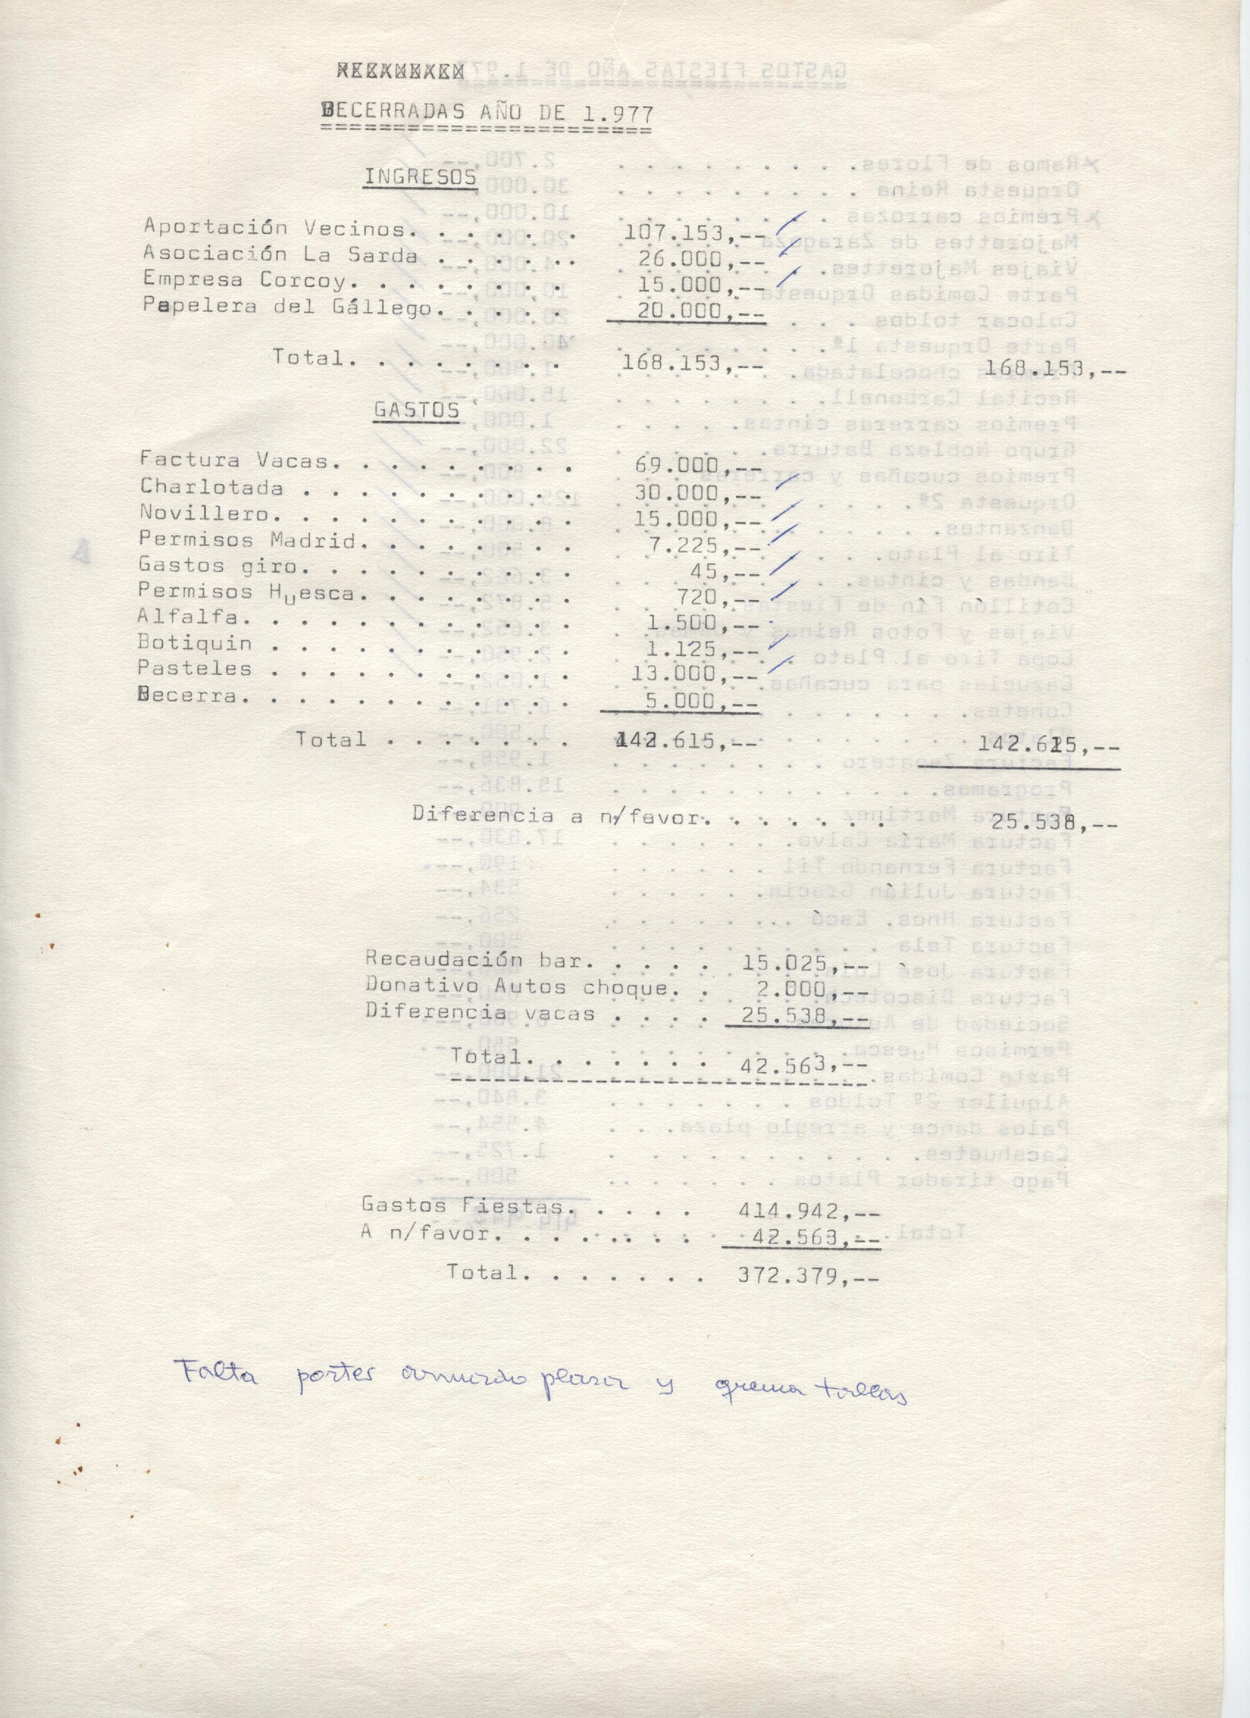 Ingresos y gastos de las becerradas de 1977 en Gurrea de Gállego.